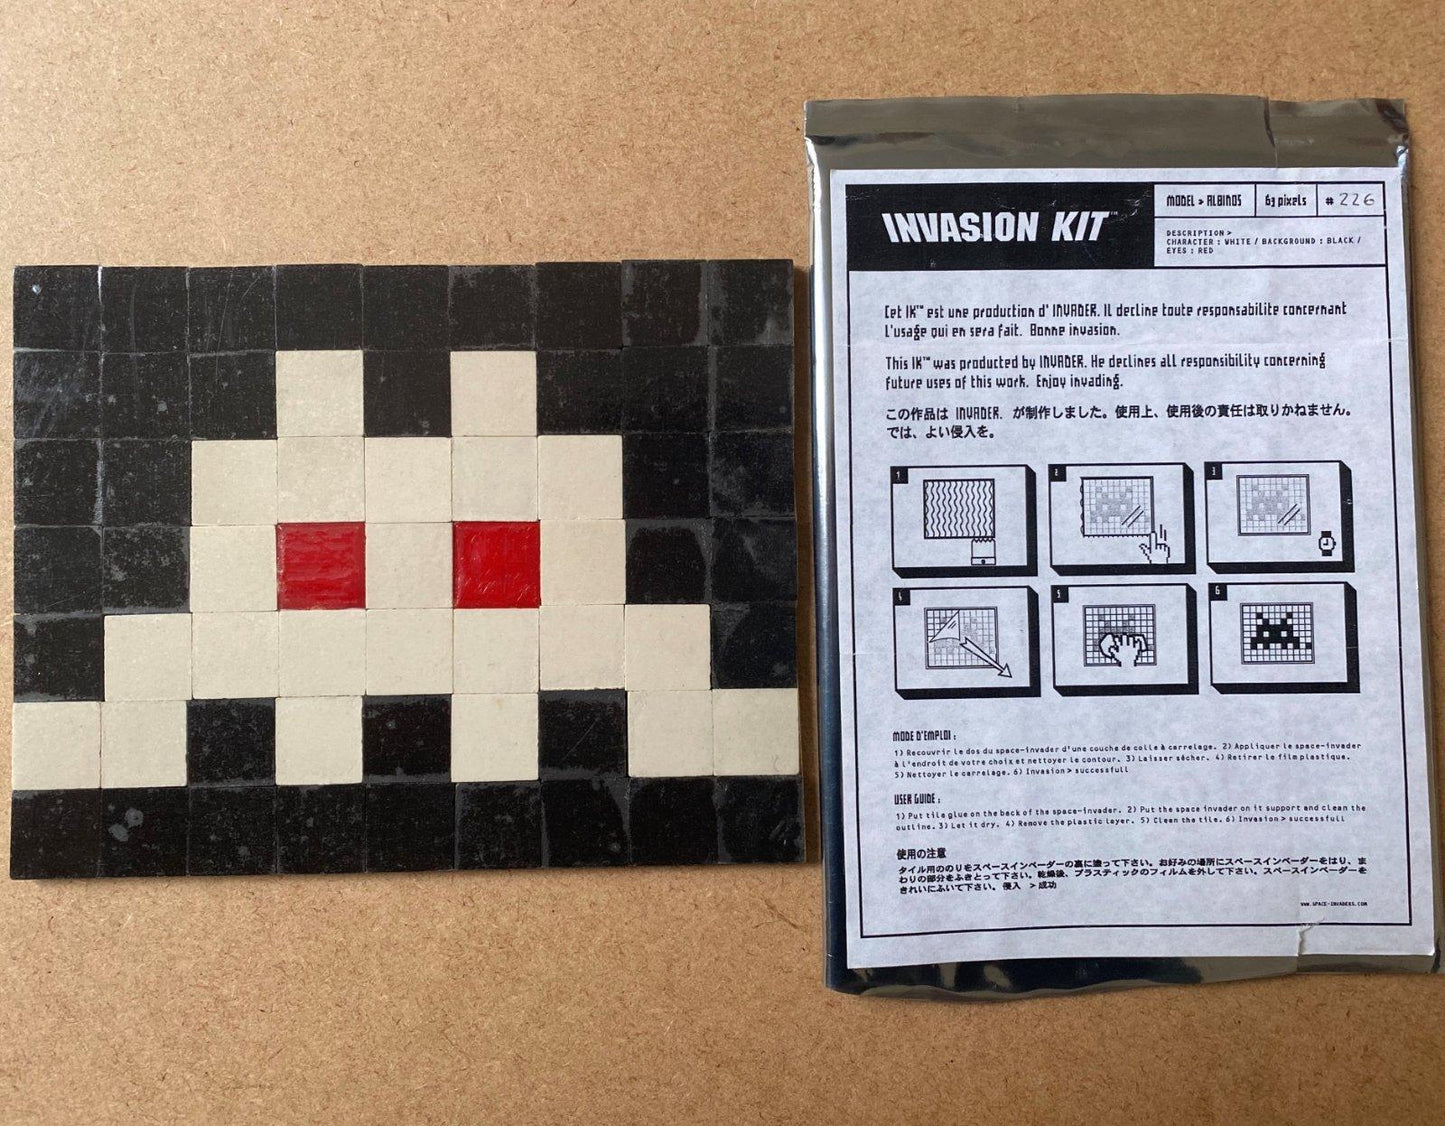 INVADER- Kit de invasión 1: Albino